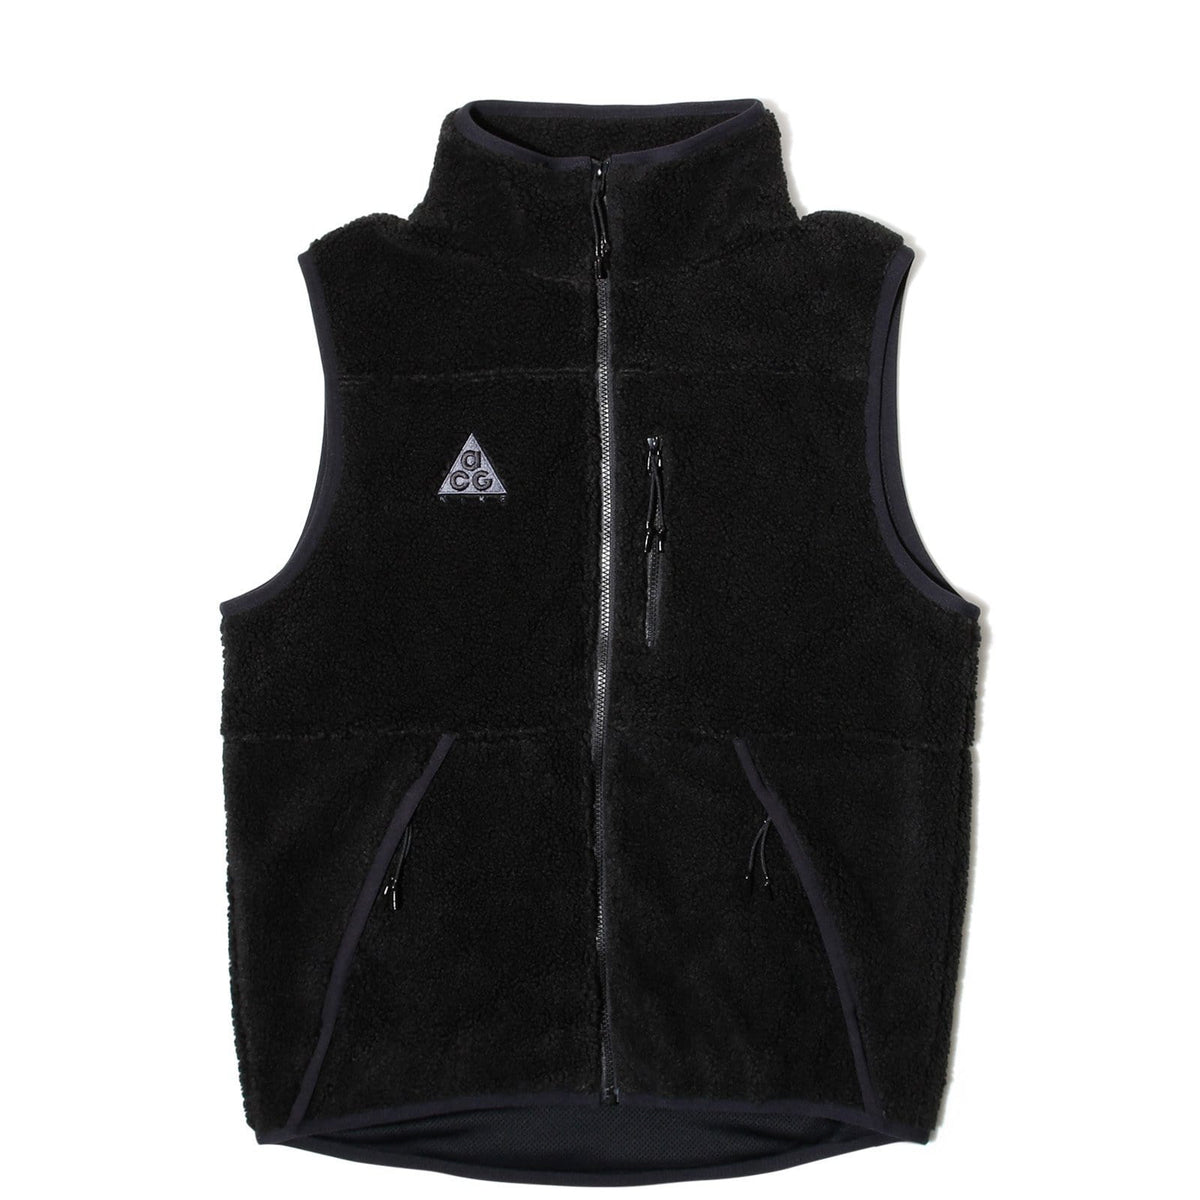 acg vest black